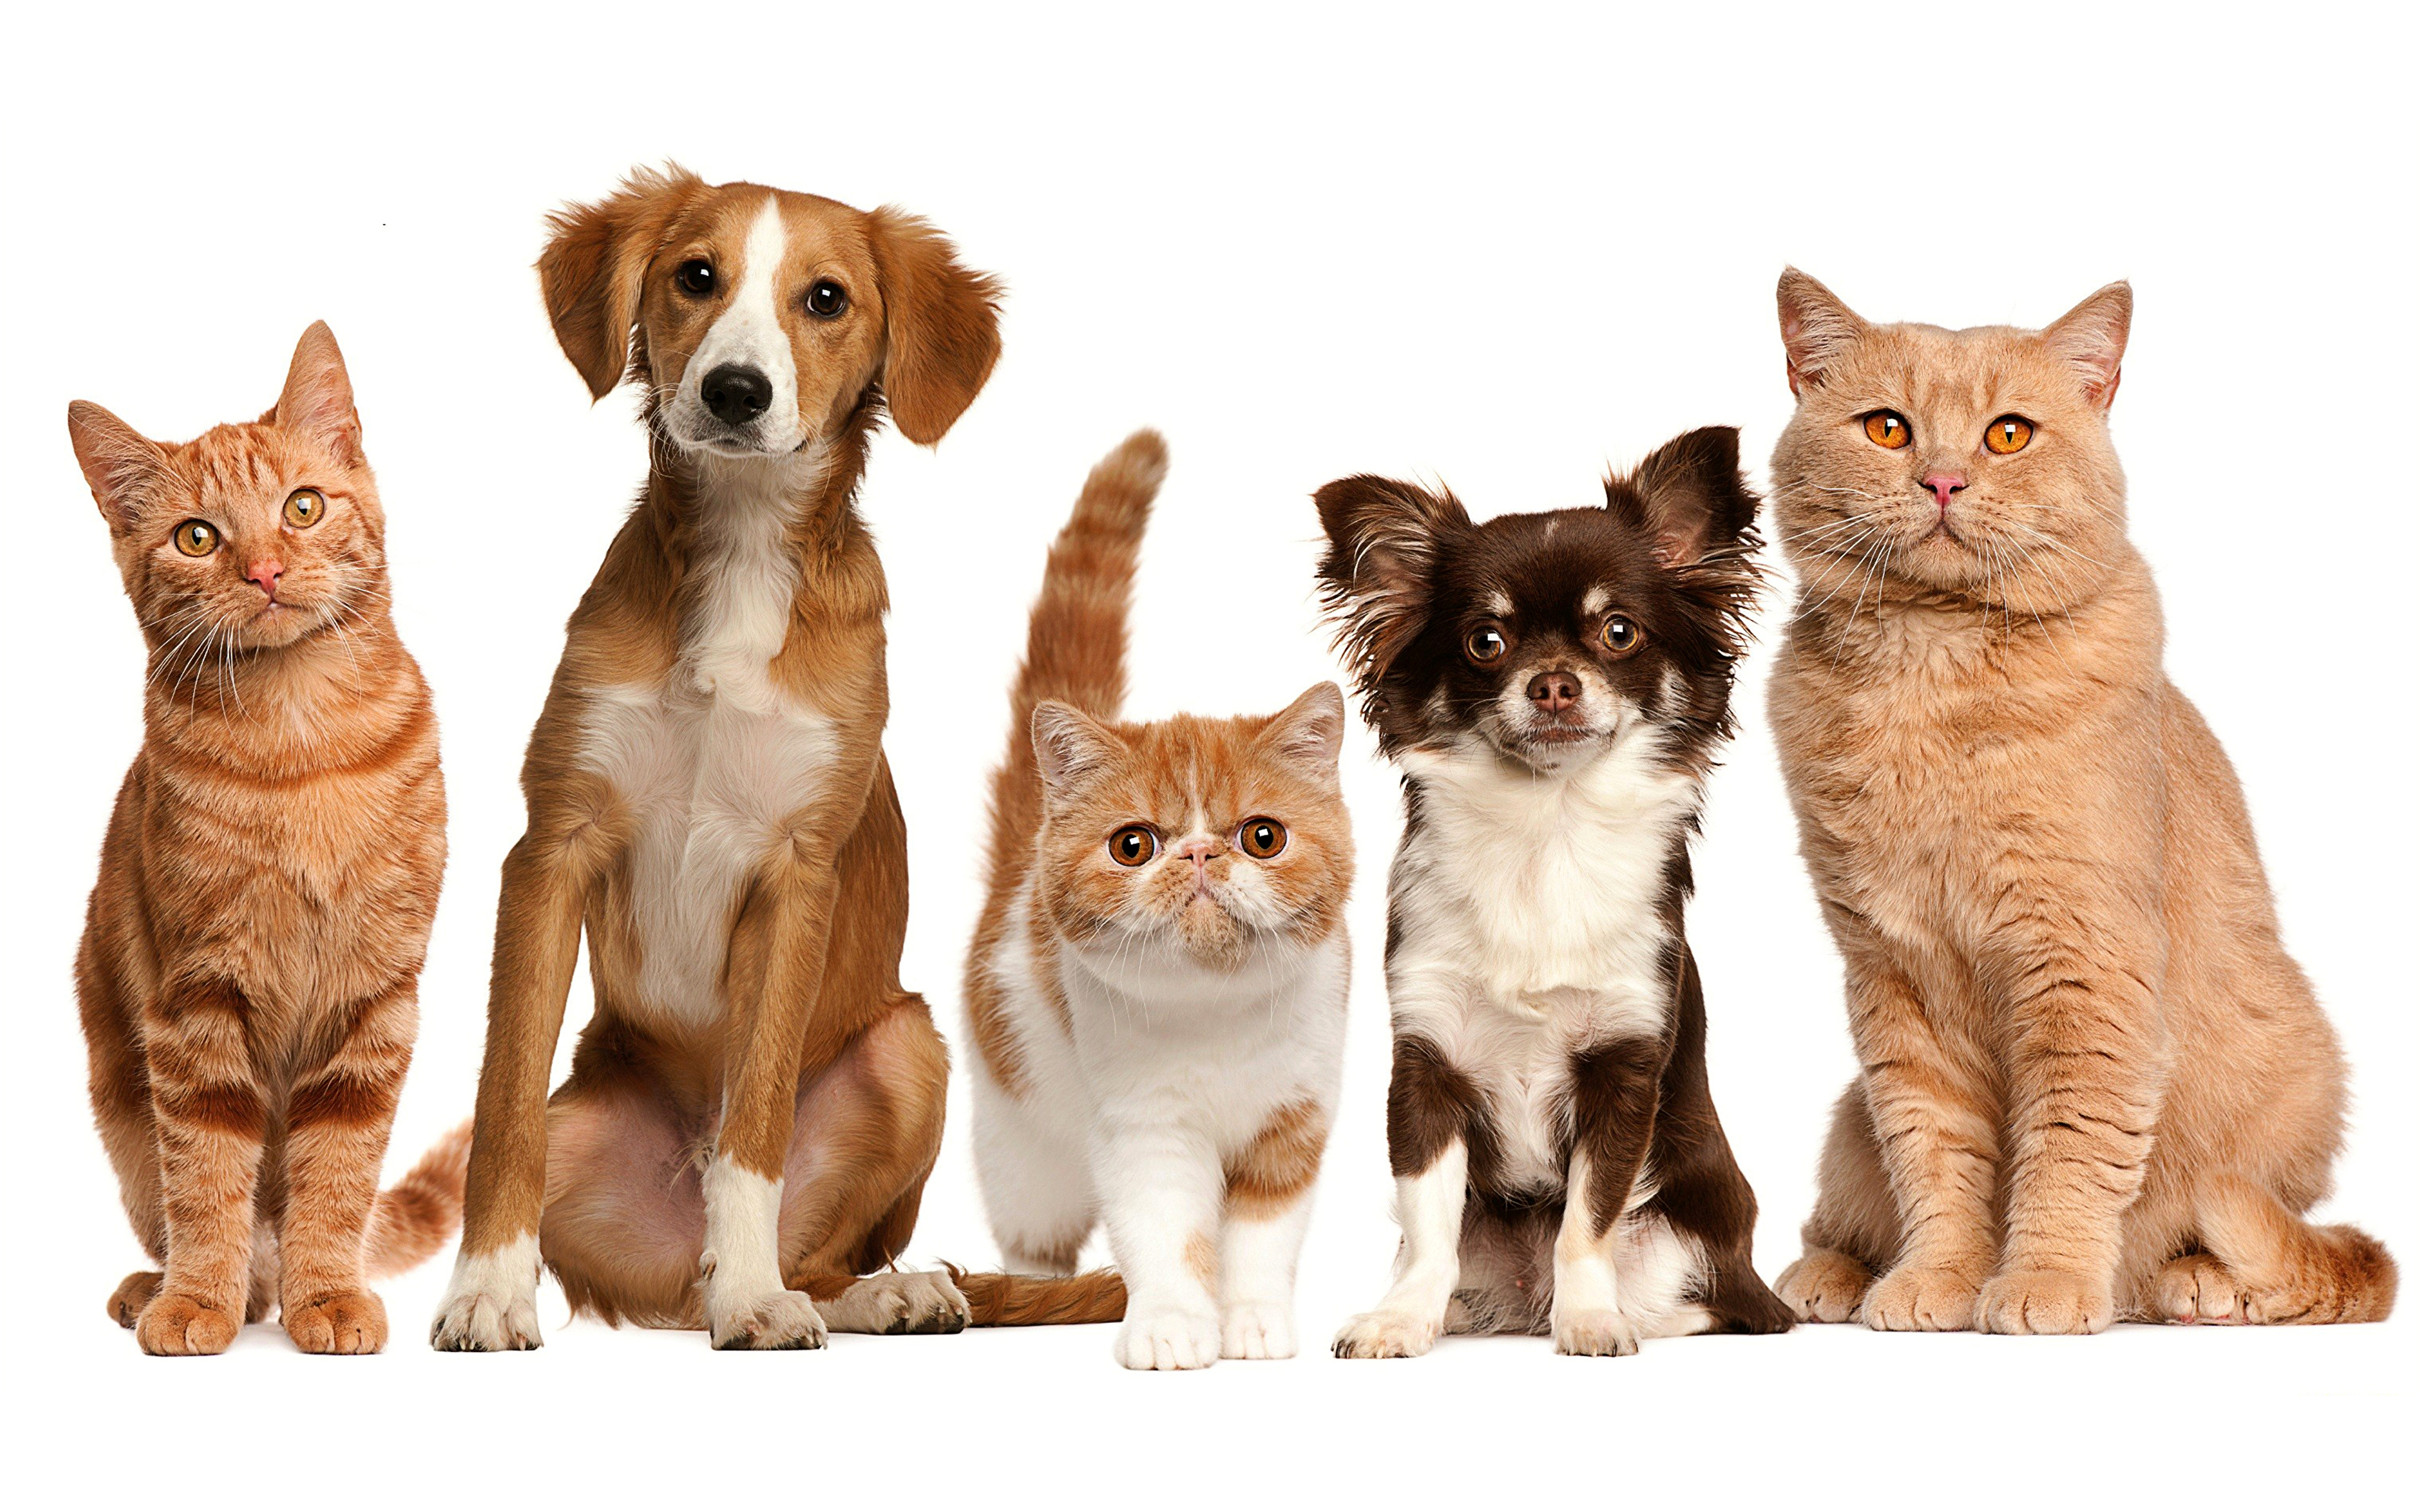 Pets vs pets. Собачки и кошечки. Домашние животные кошки и собаки. Картинки кошек и собак. Кошка и собака на белом фоне.